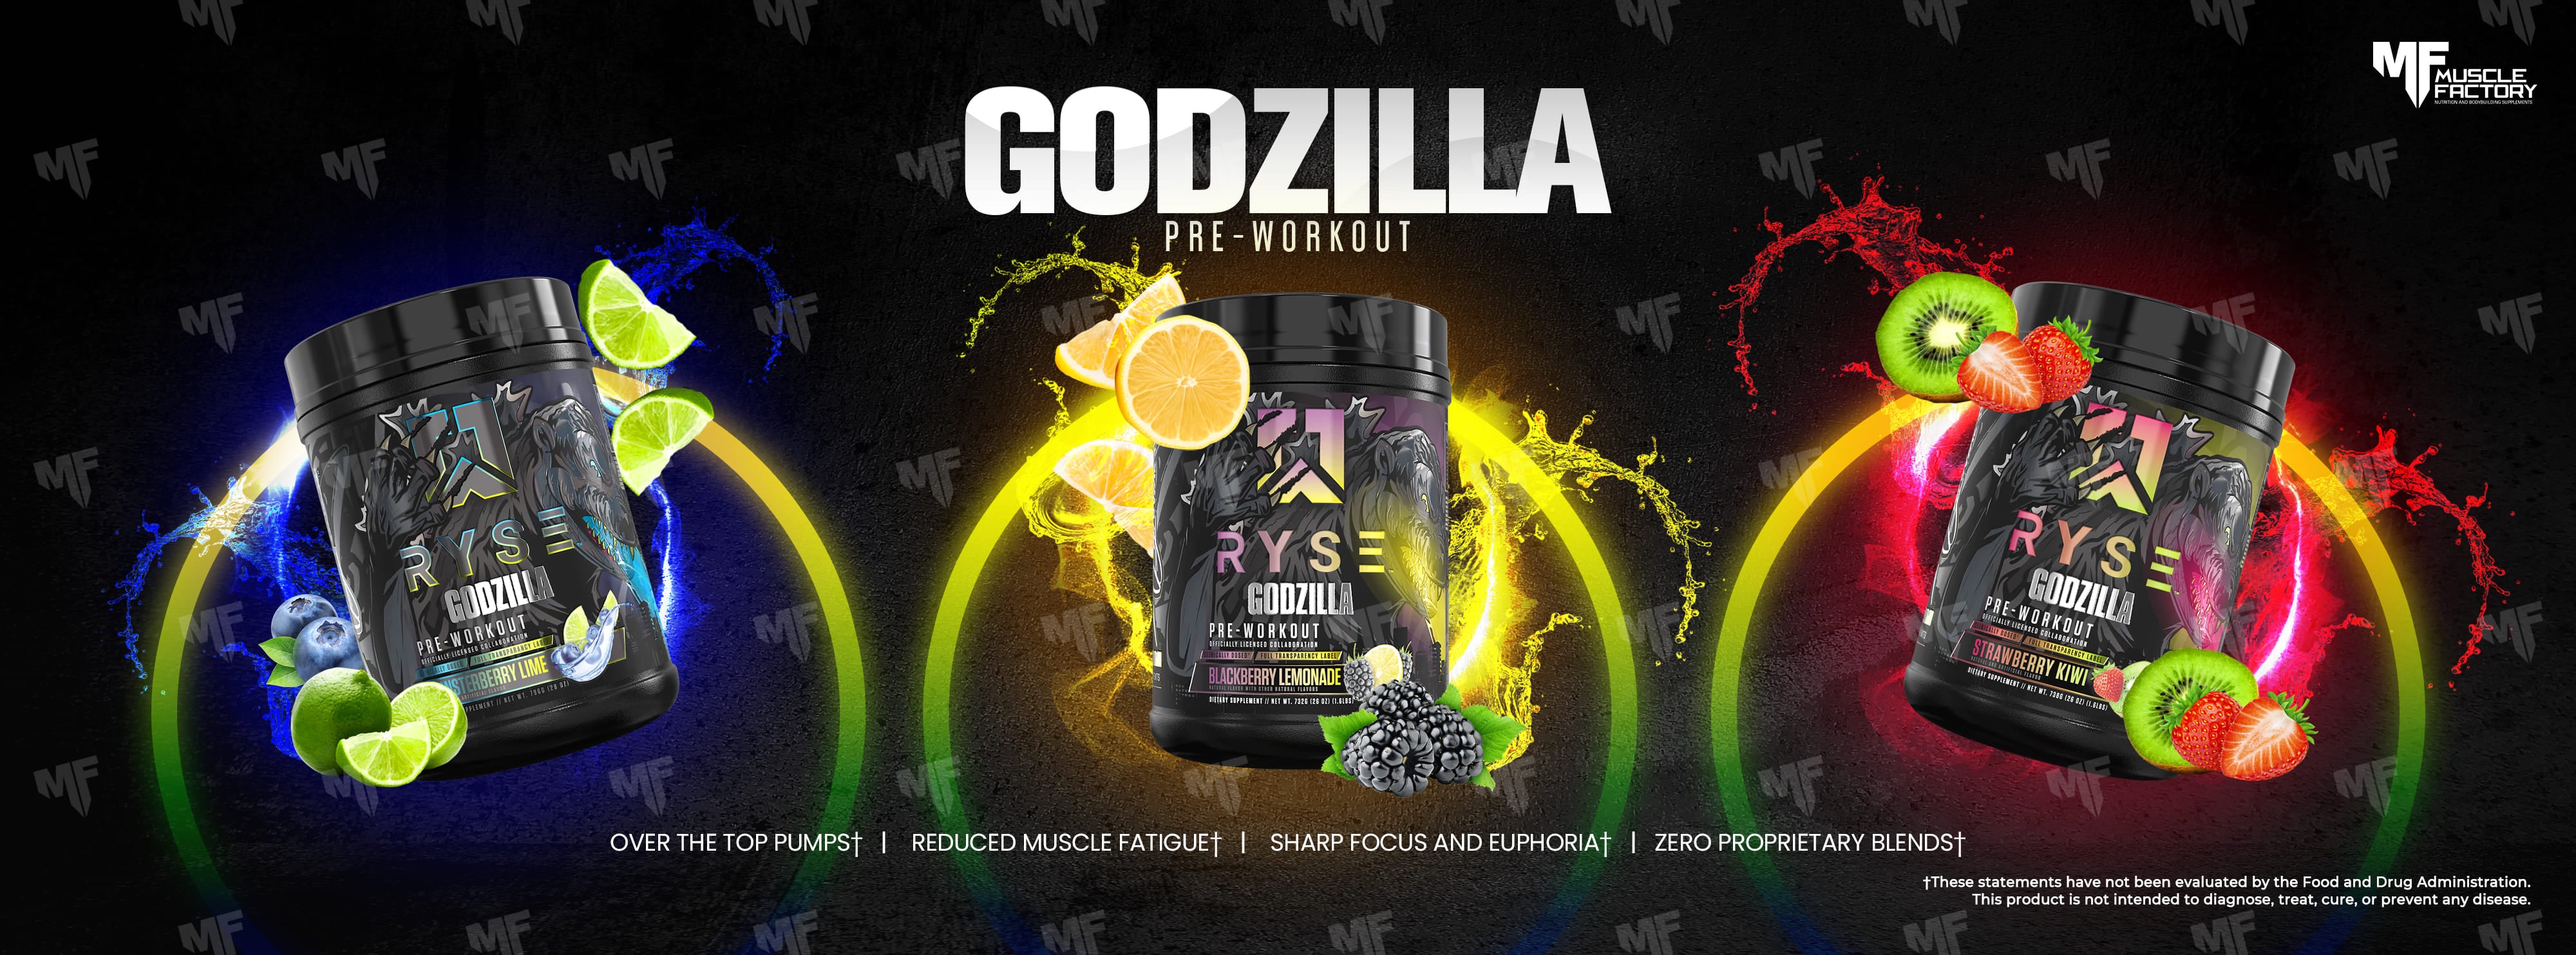 Ryse Supps Godzilla Pre-Workout